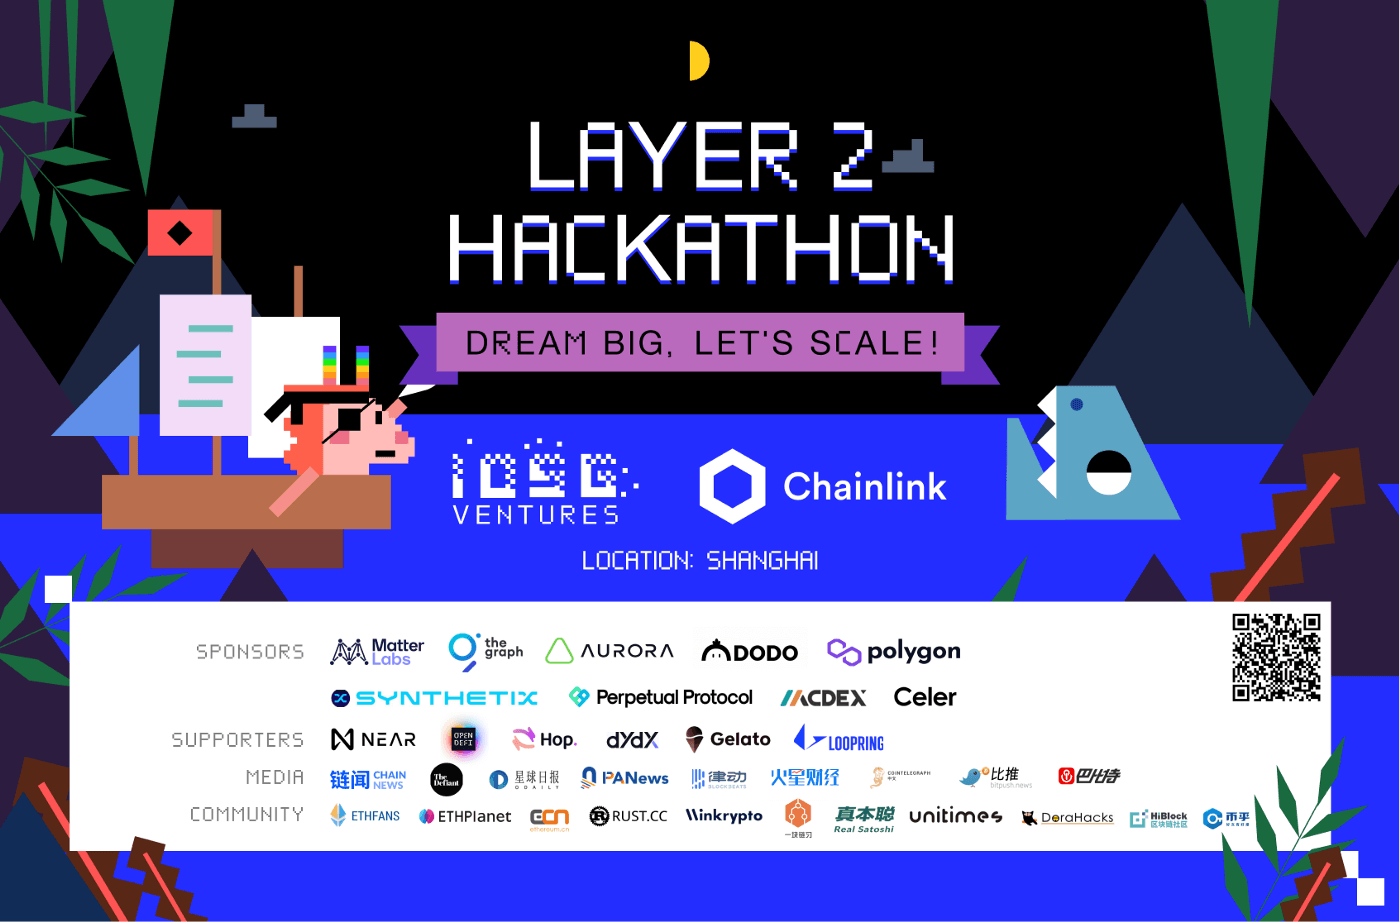 IOSG Ventures x Chainlink Hackathon